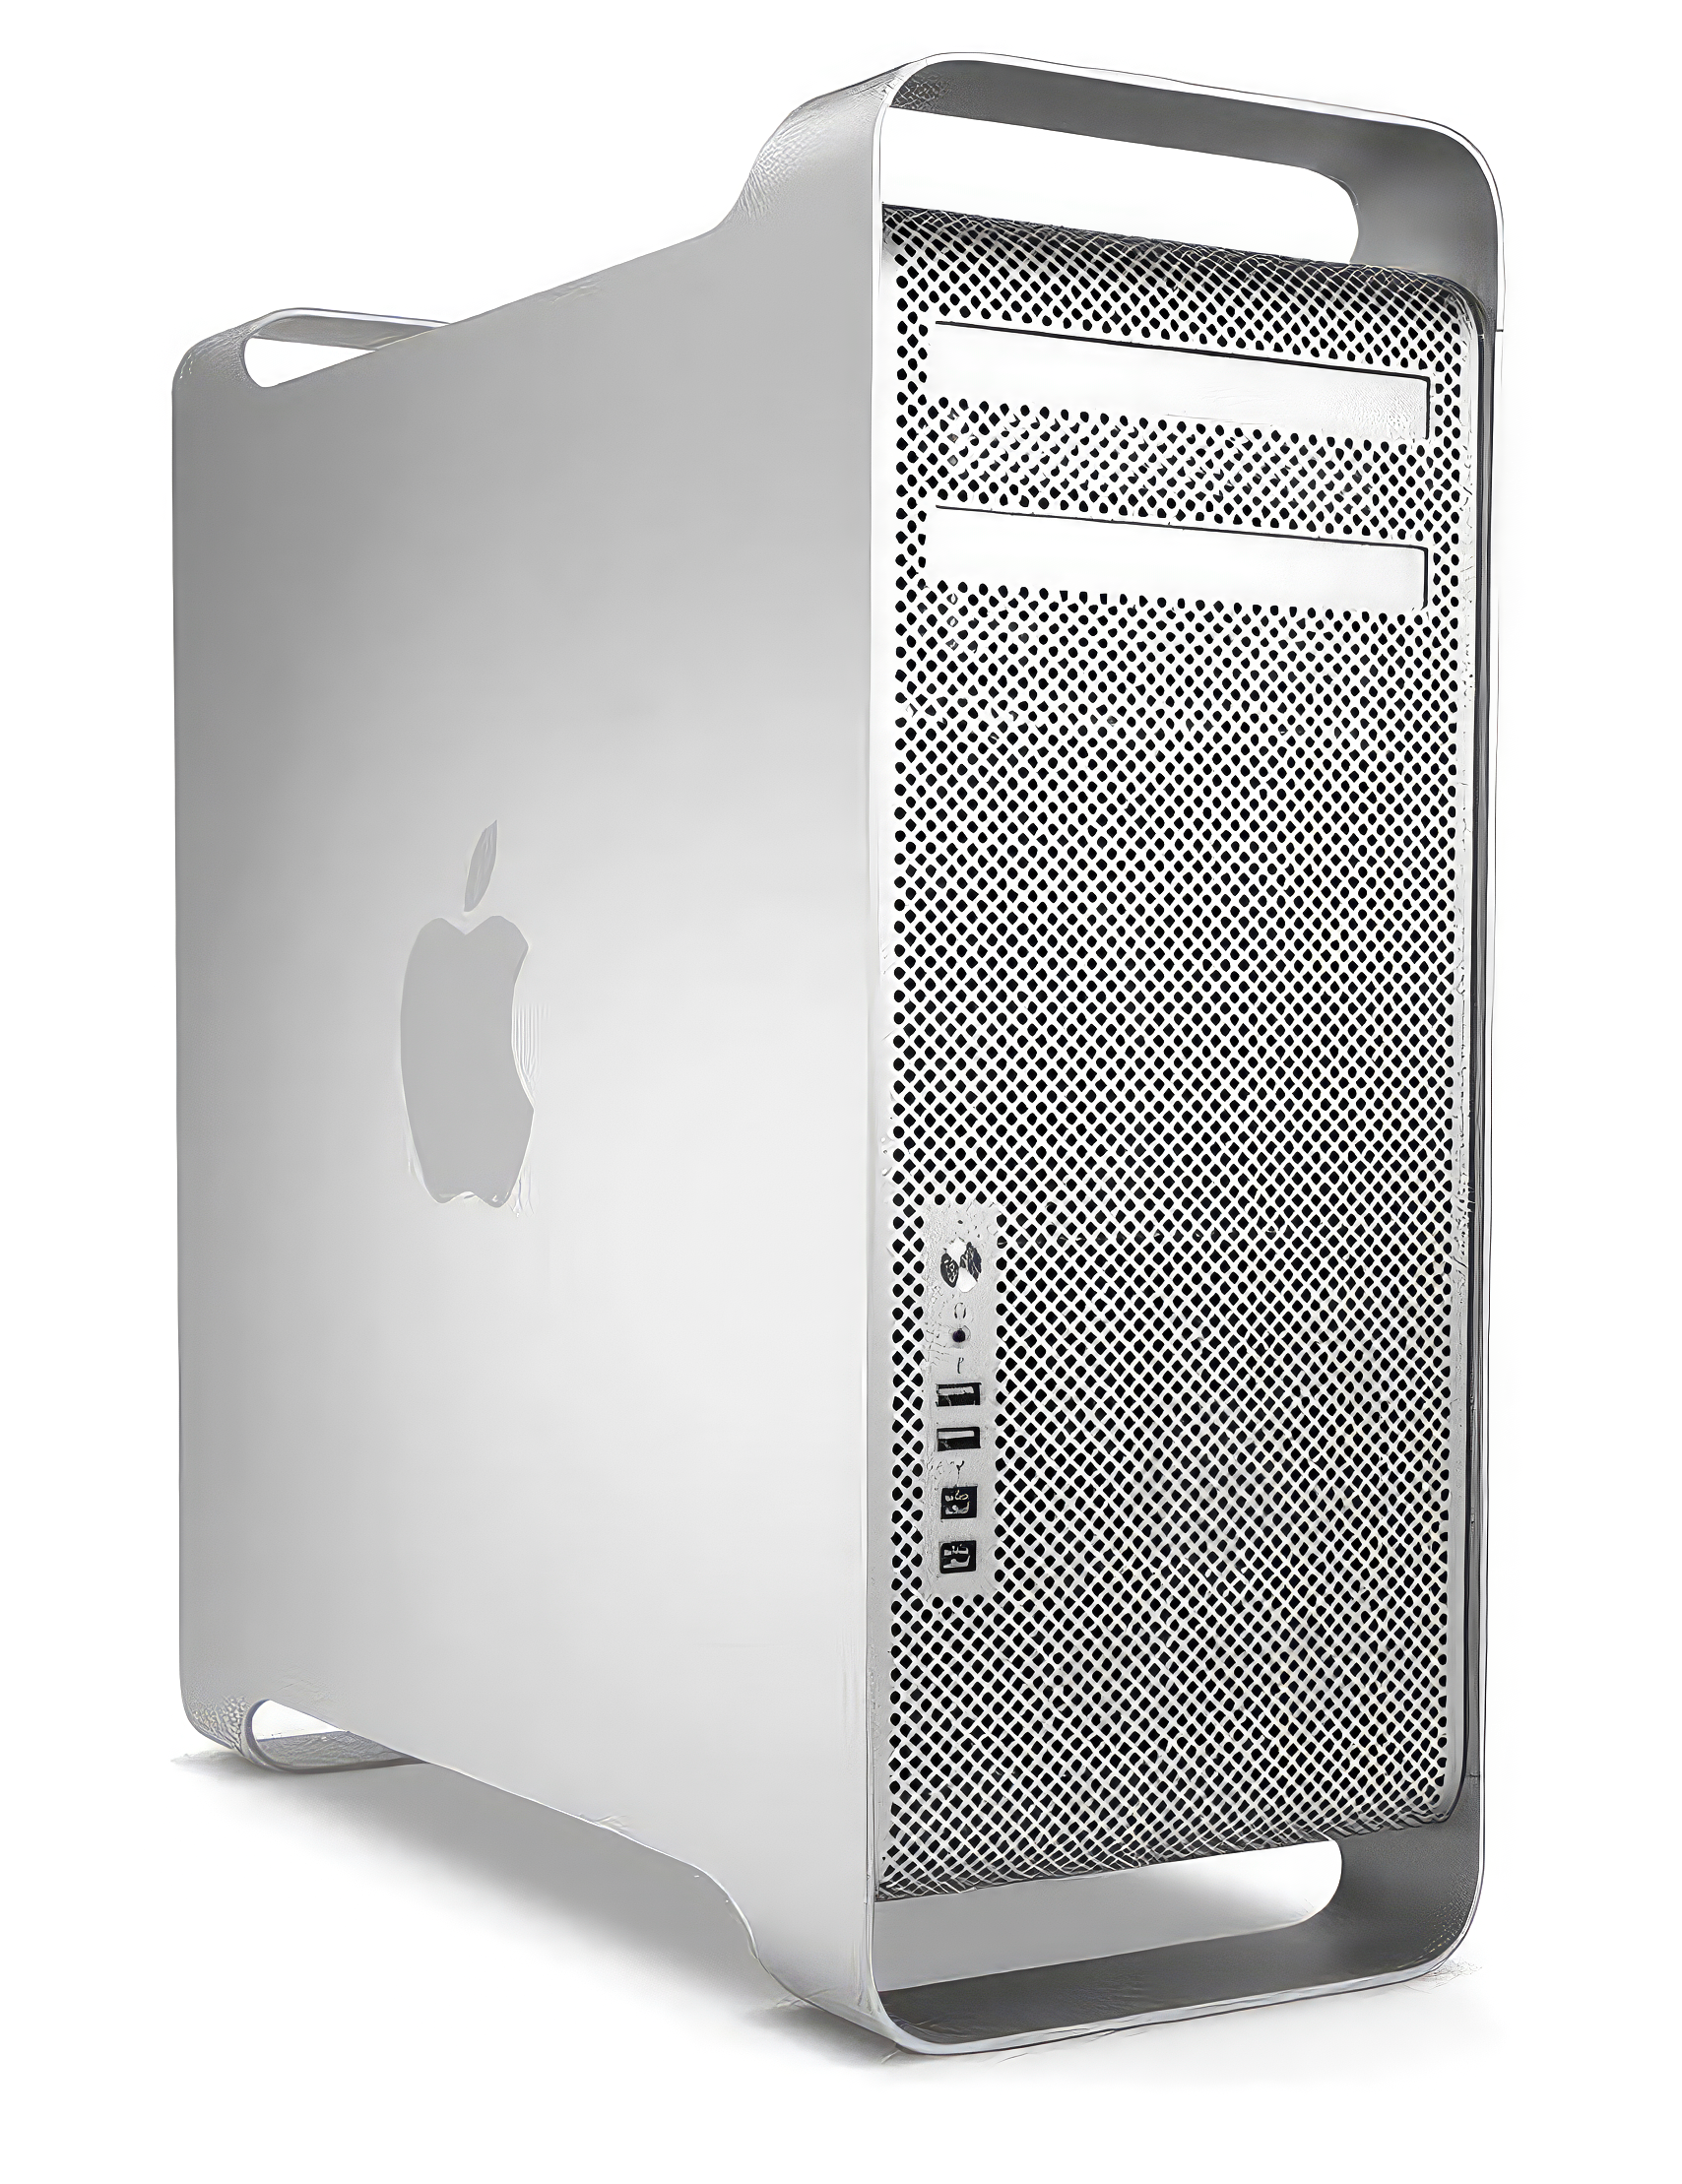 Apple Mac Pro Server Mid 2010 Ug